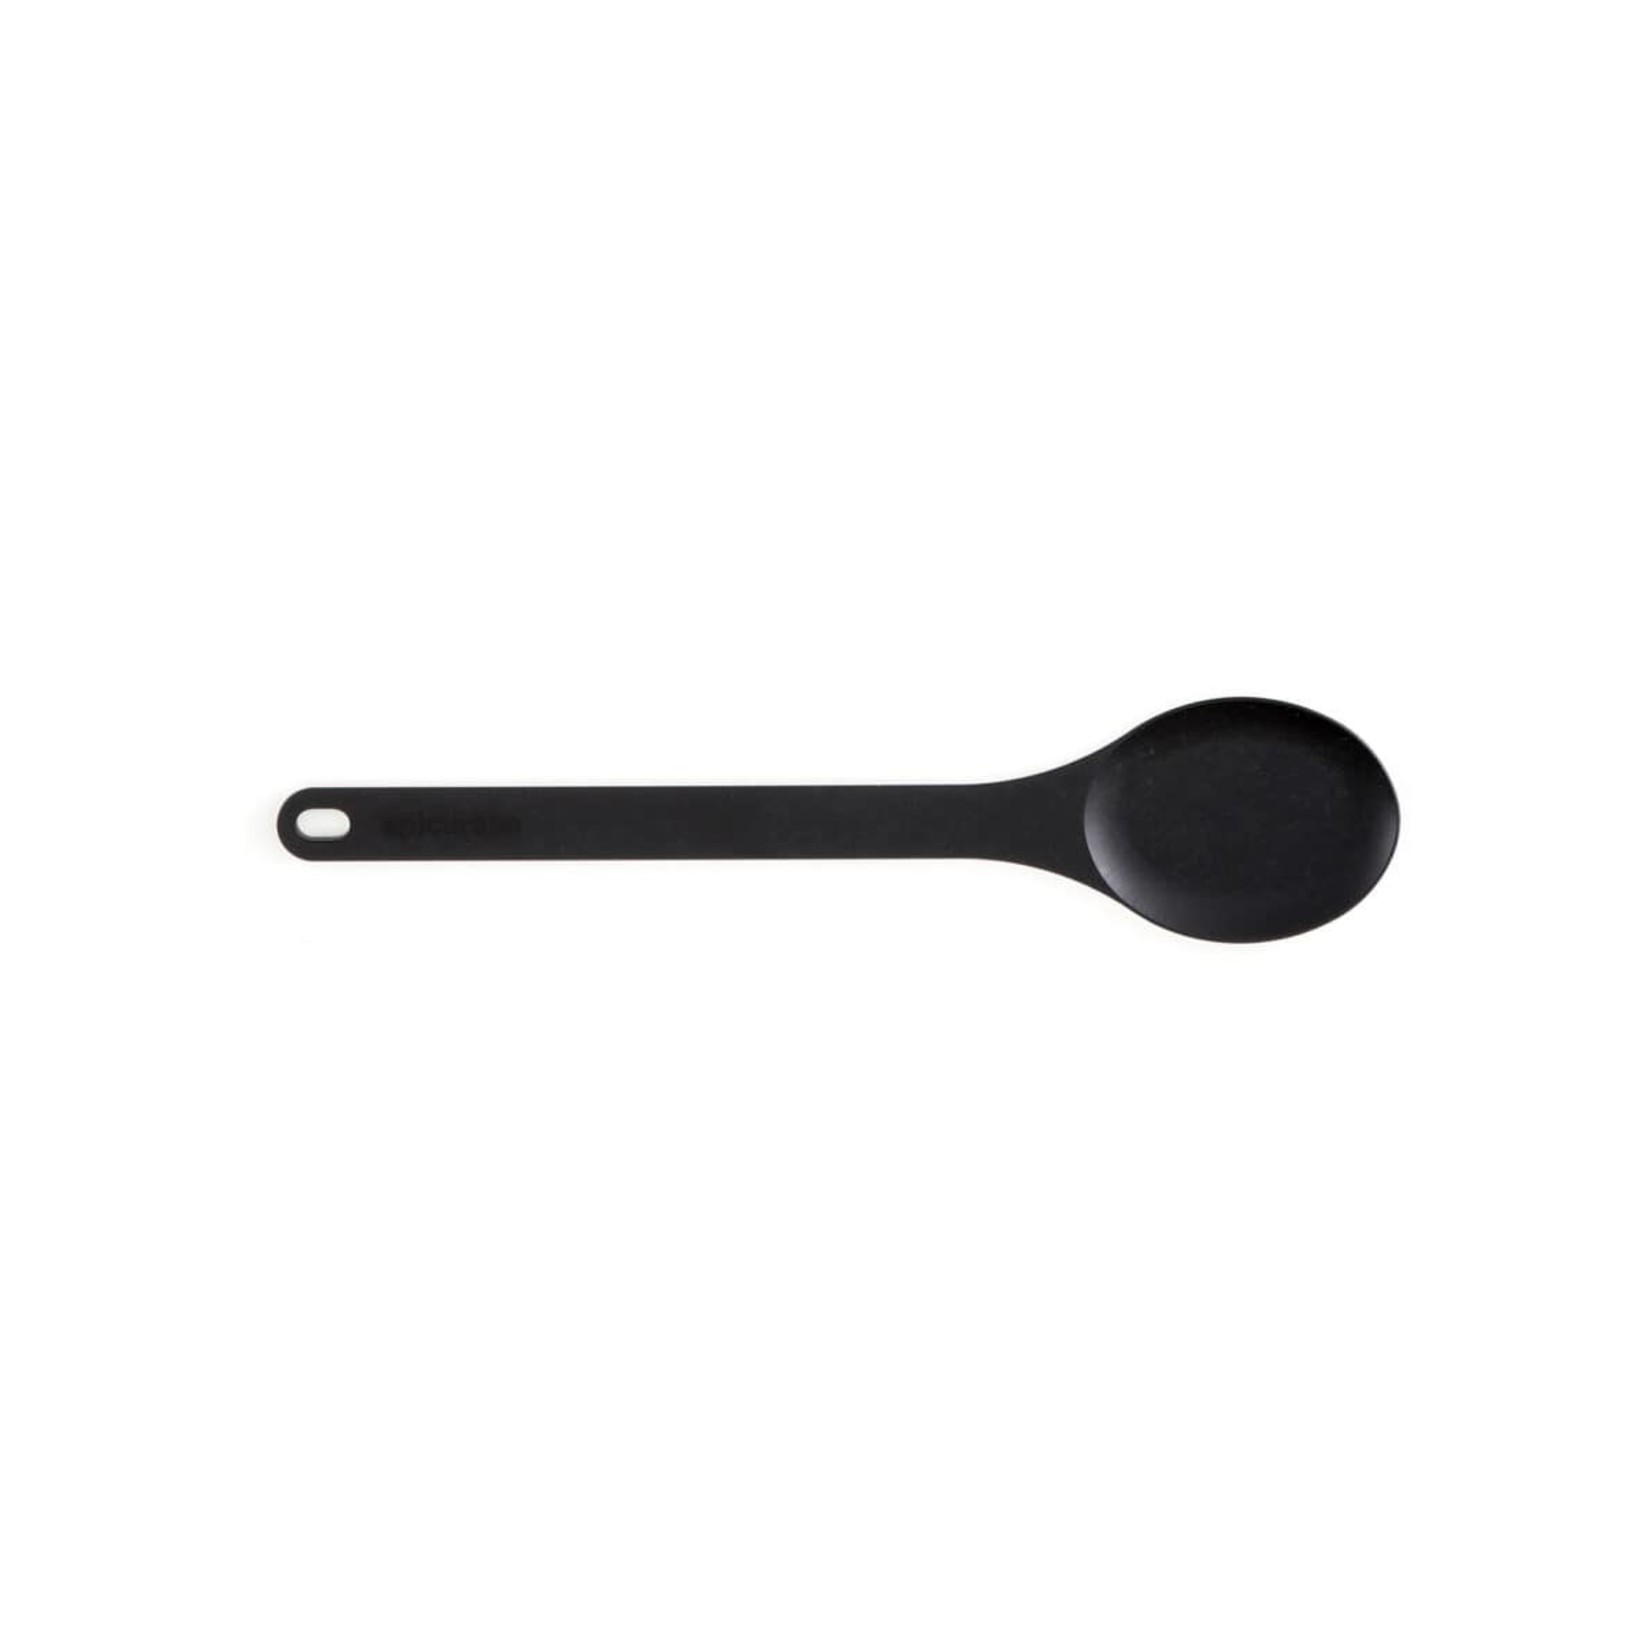 EPICUREAN EPICUREAN Kitchen Series Large Spoon - Slate